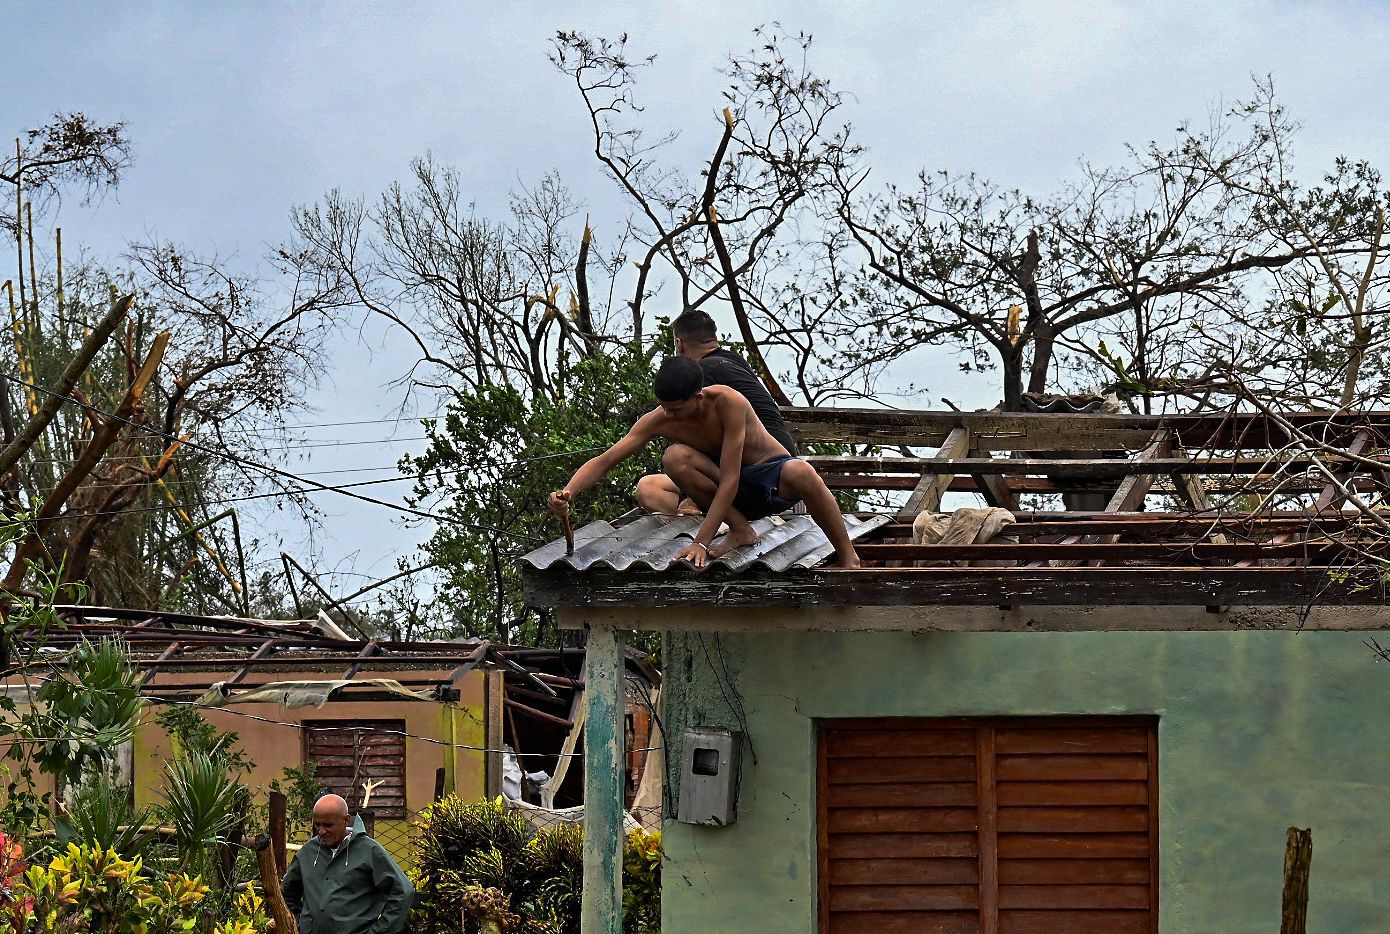 Cubanos reparan un techo en San Juan y Martínez, provincia de Pinar del Río, el 27 de septiembre de 2022 tras el paso del huracán Ian. (Foto de ADALBERTO ROQUE / AFP)